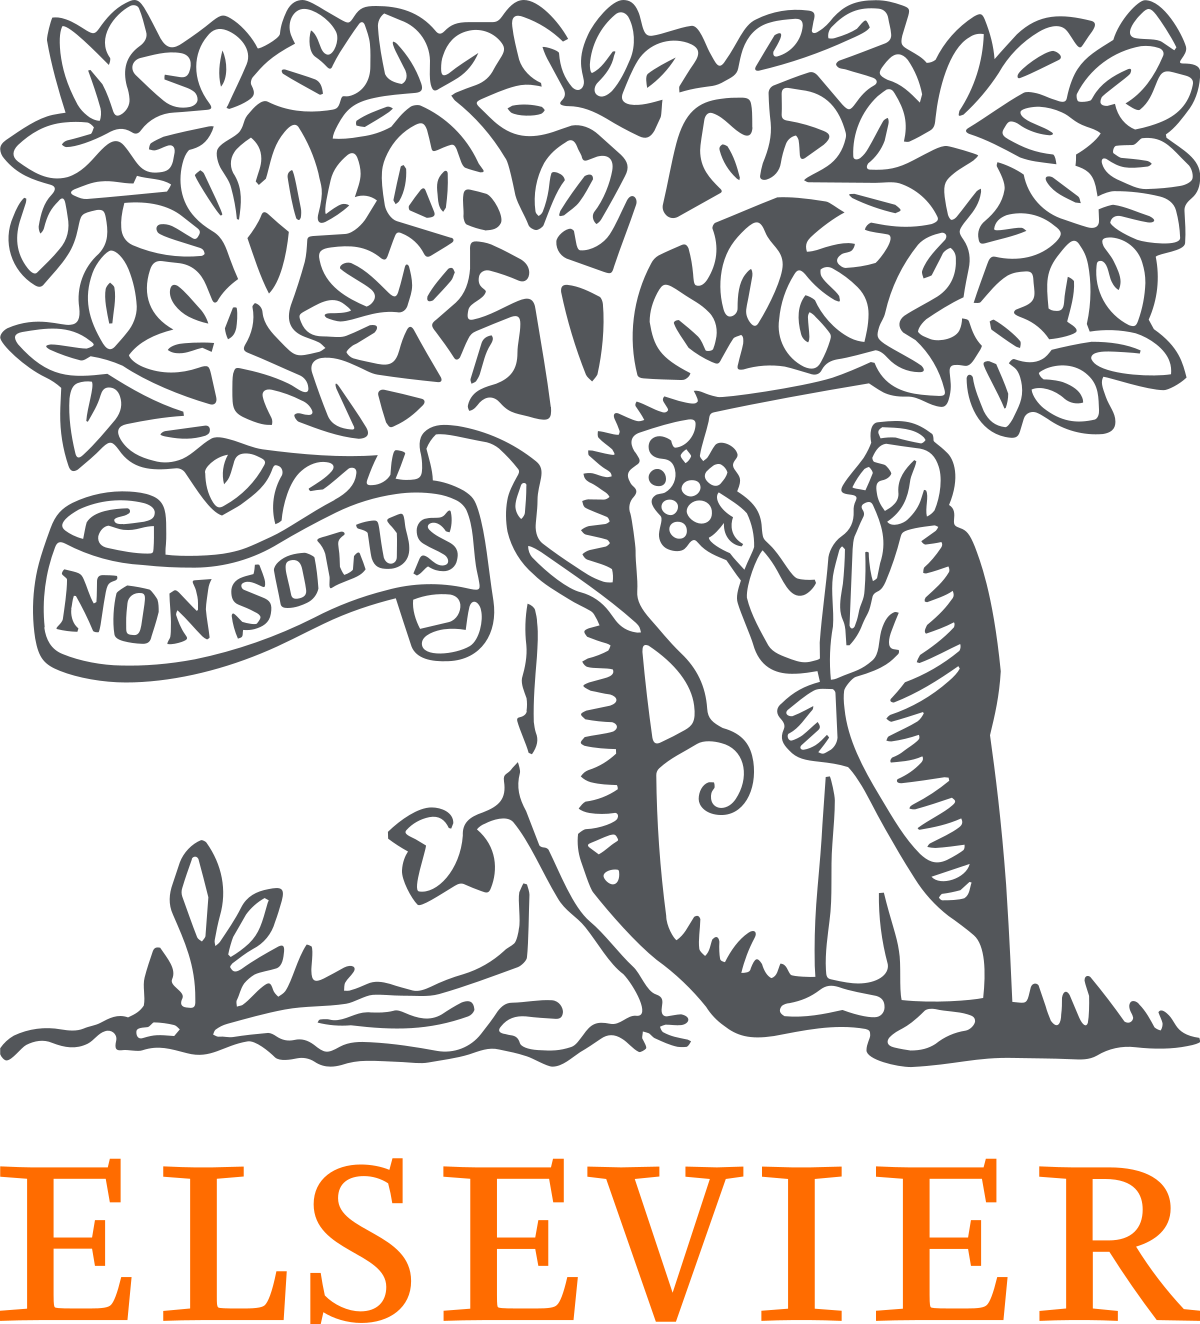 Elsevier_logo_2019.svg